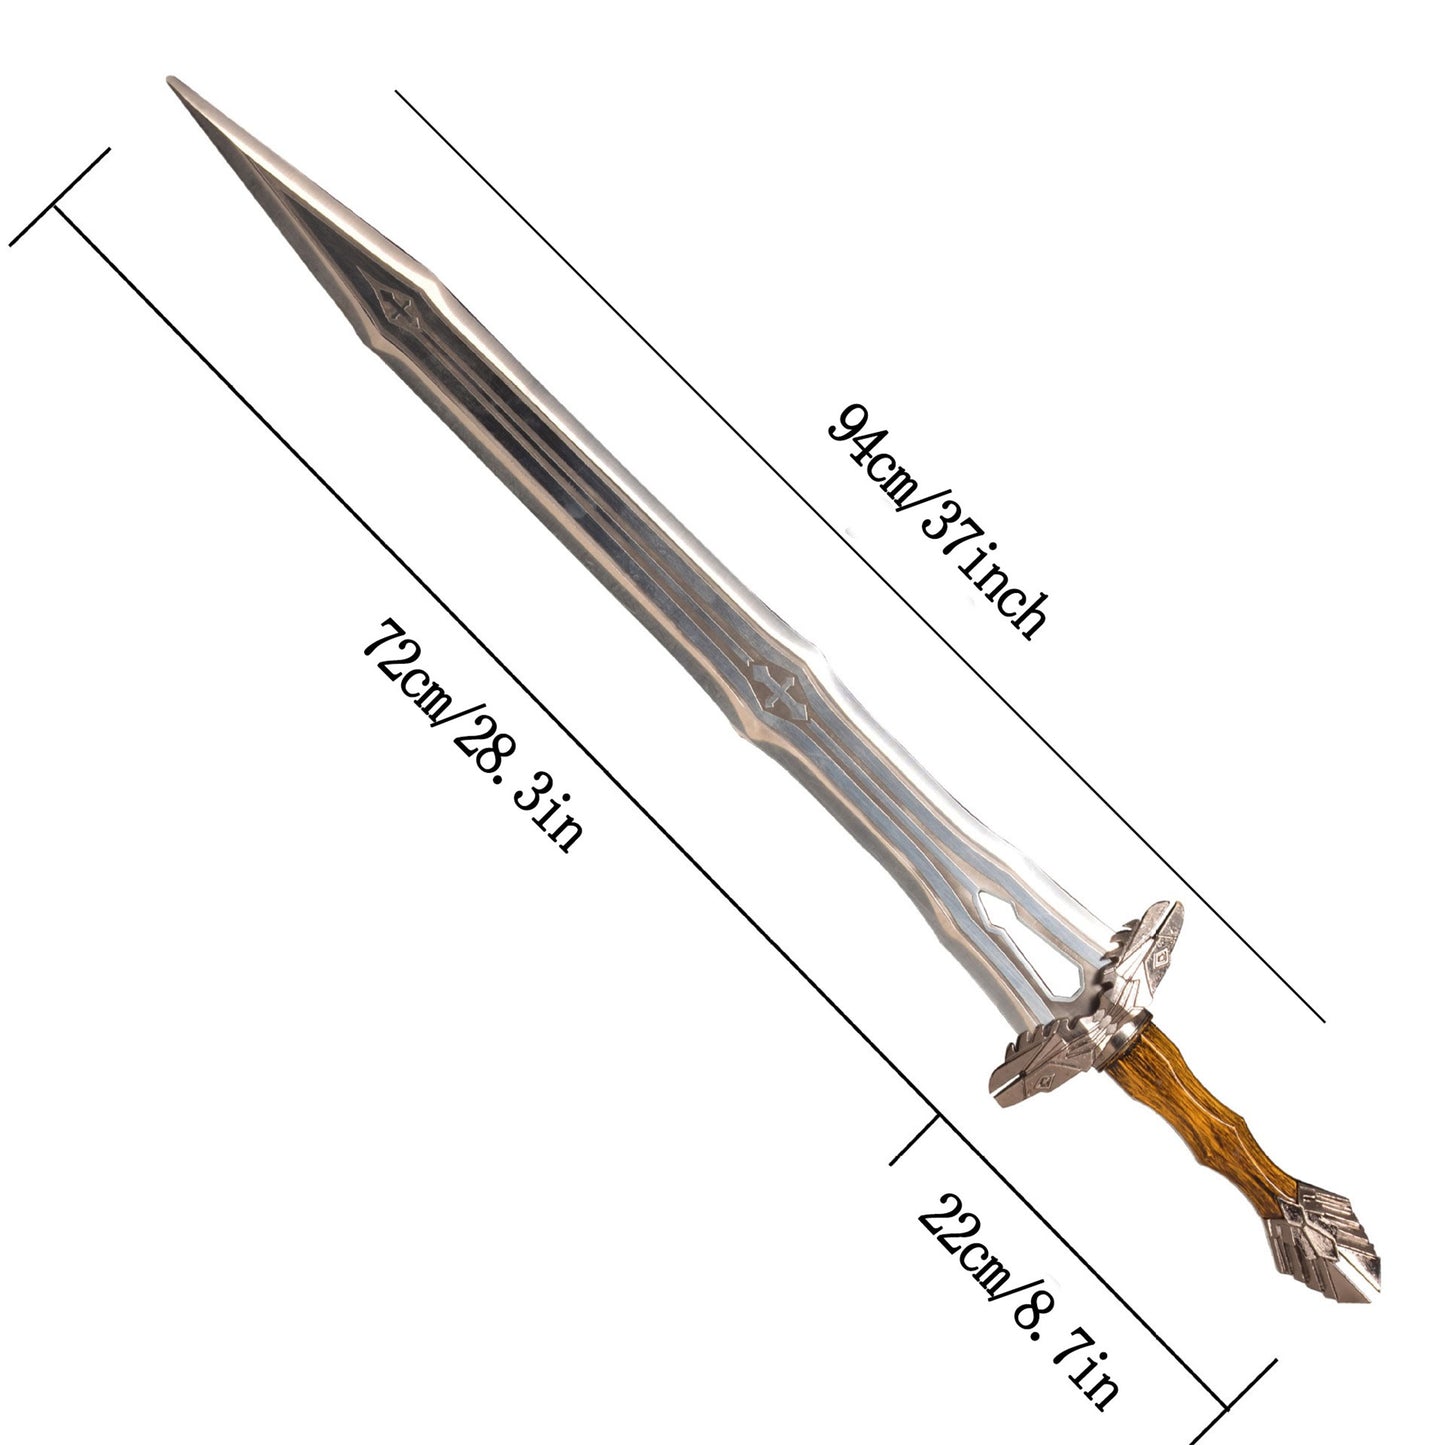 Regal Dwarven Short Sword Metal Replica Cosplay Prop 37"